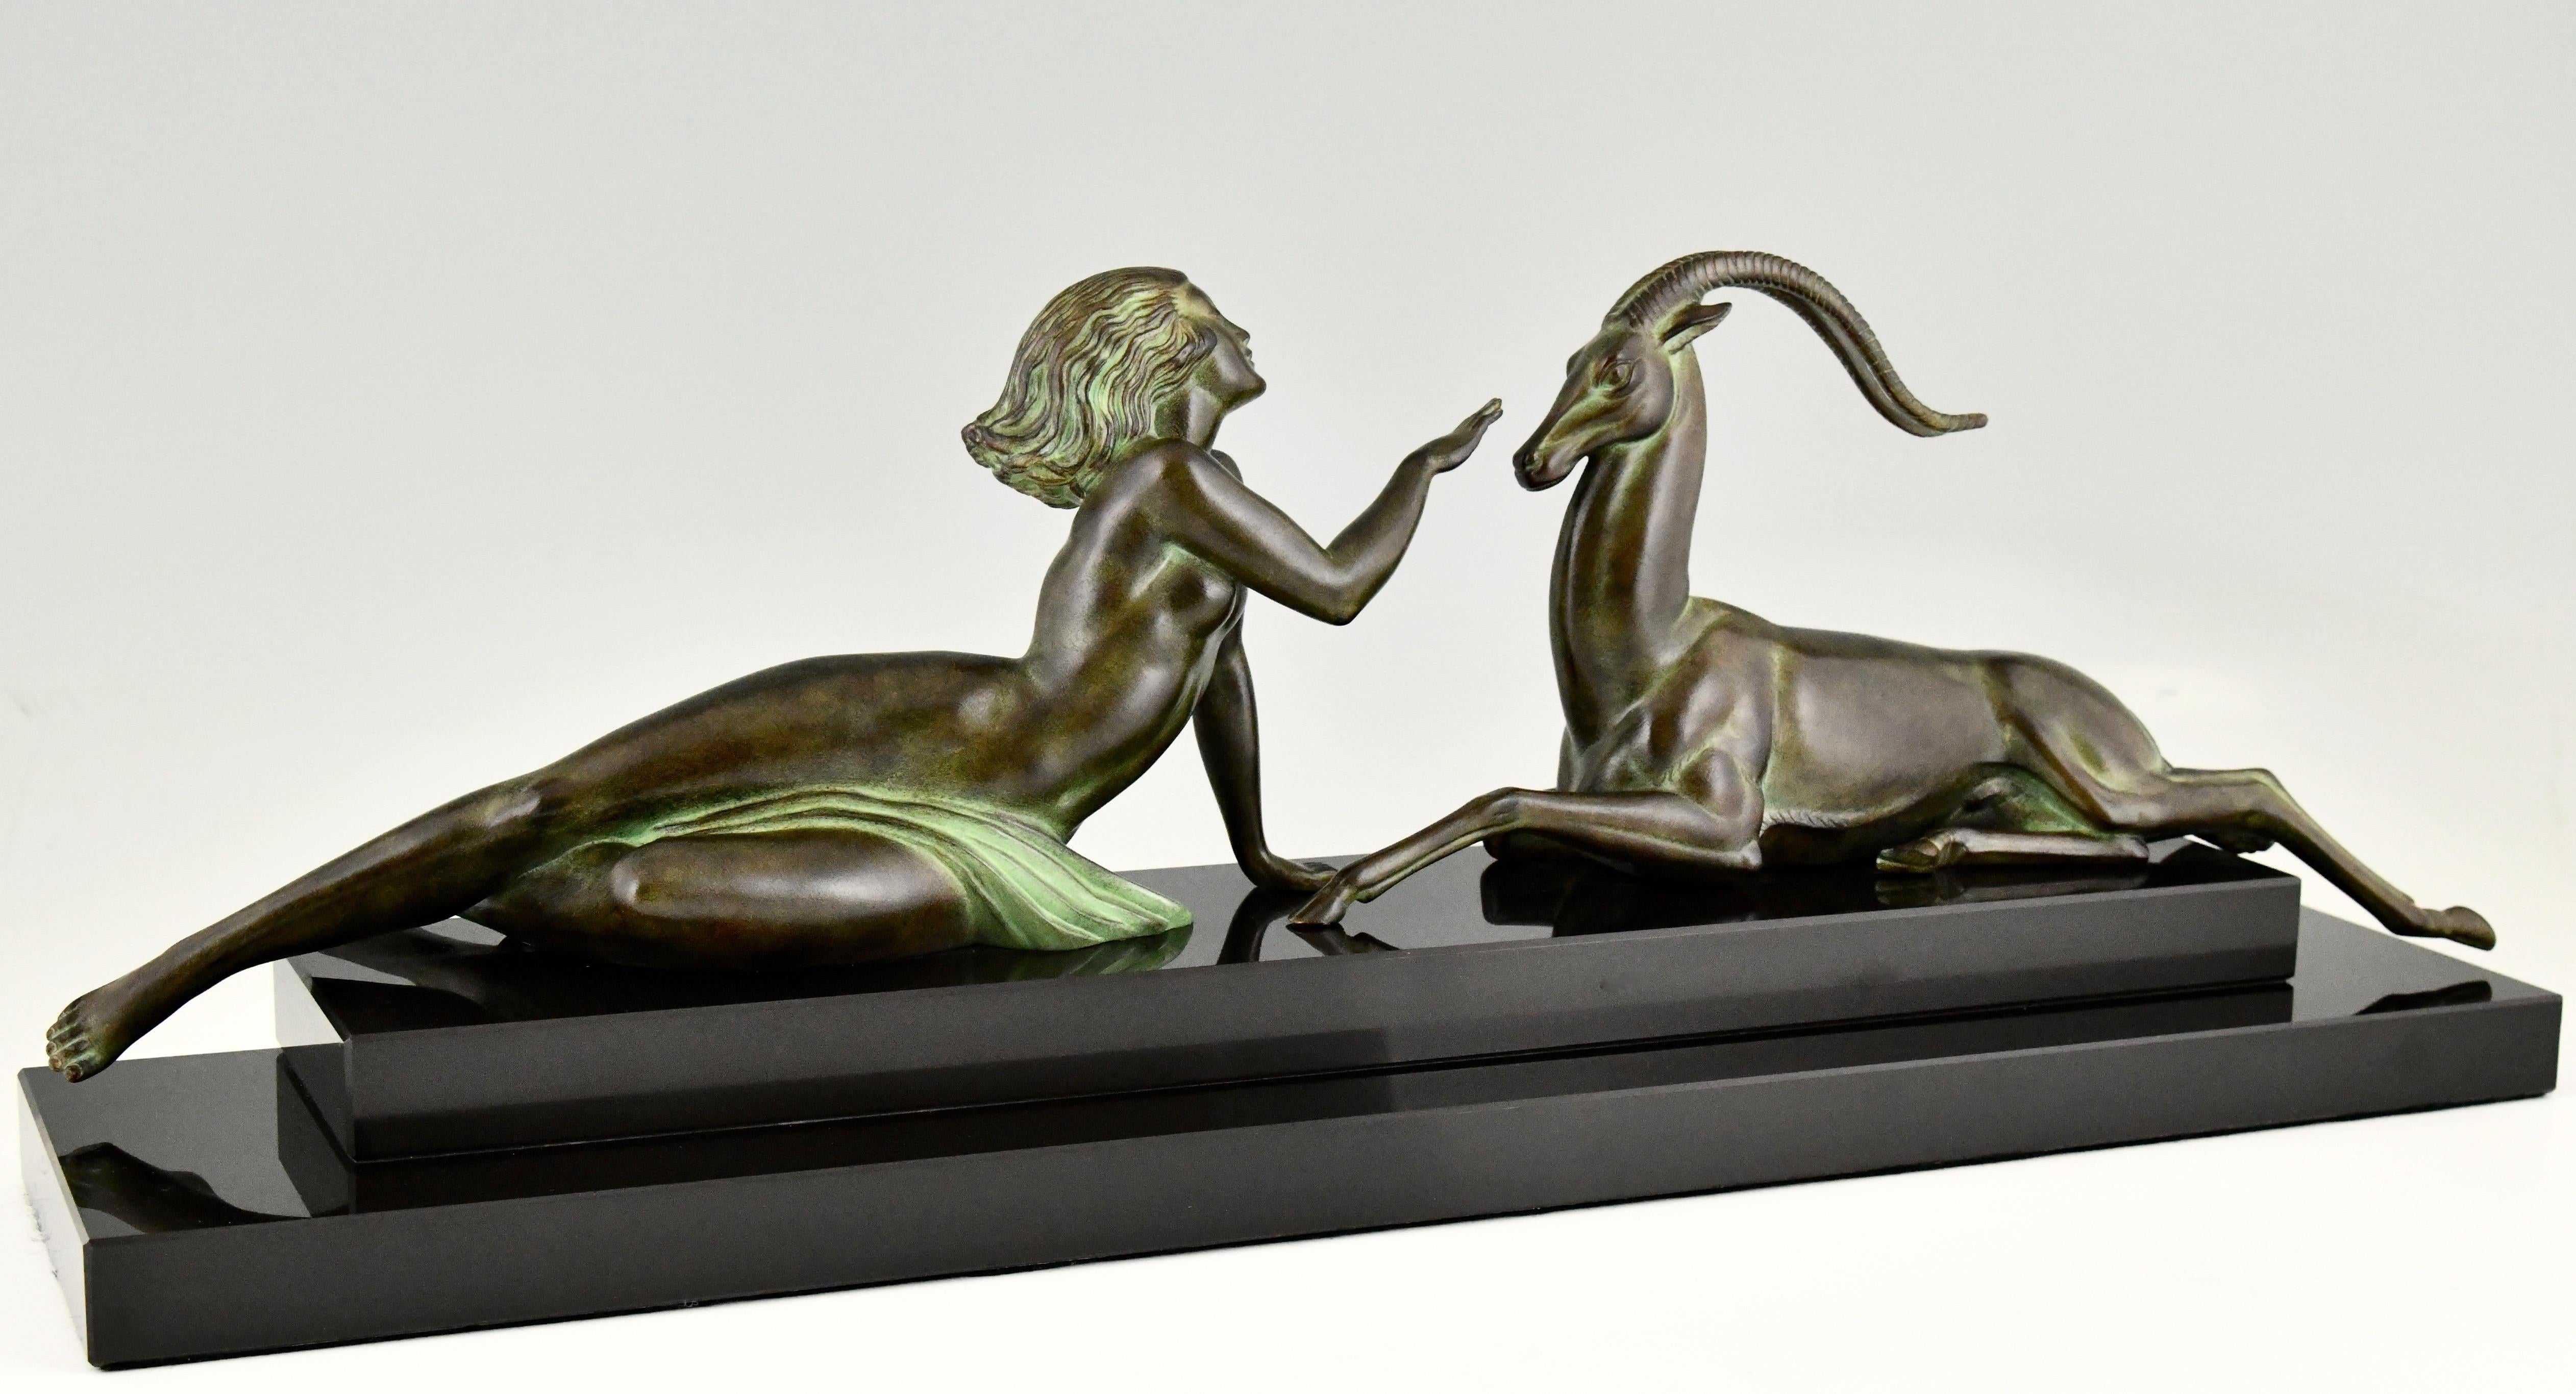 Séduction, élégante sculpture de style Art Deco Style d'une femme nue avec gazelle par Pierre Le Faguays pour Max Le Verrier, signée Fayal et avec cachet de la fonderie. 
Métal d'art patiné vert foncé sur une base en marbre noir. 

Ce modèle est